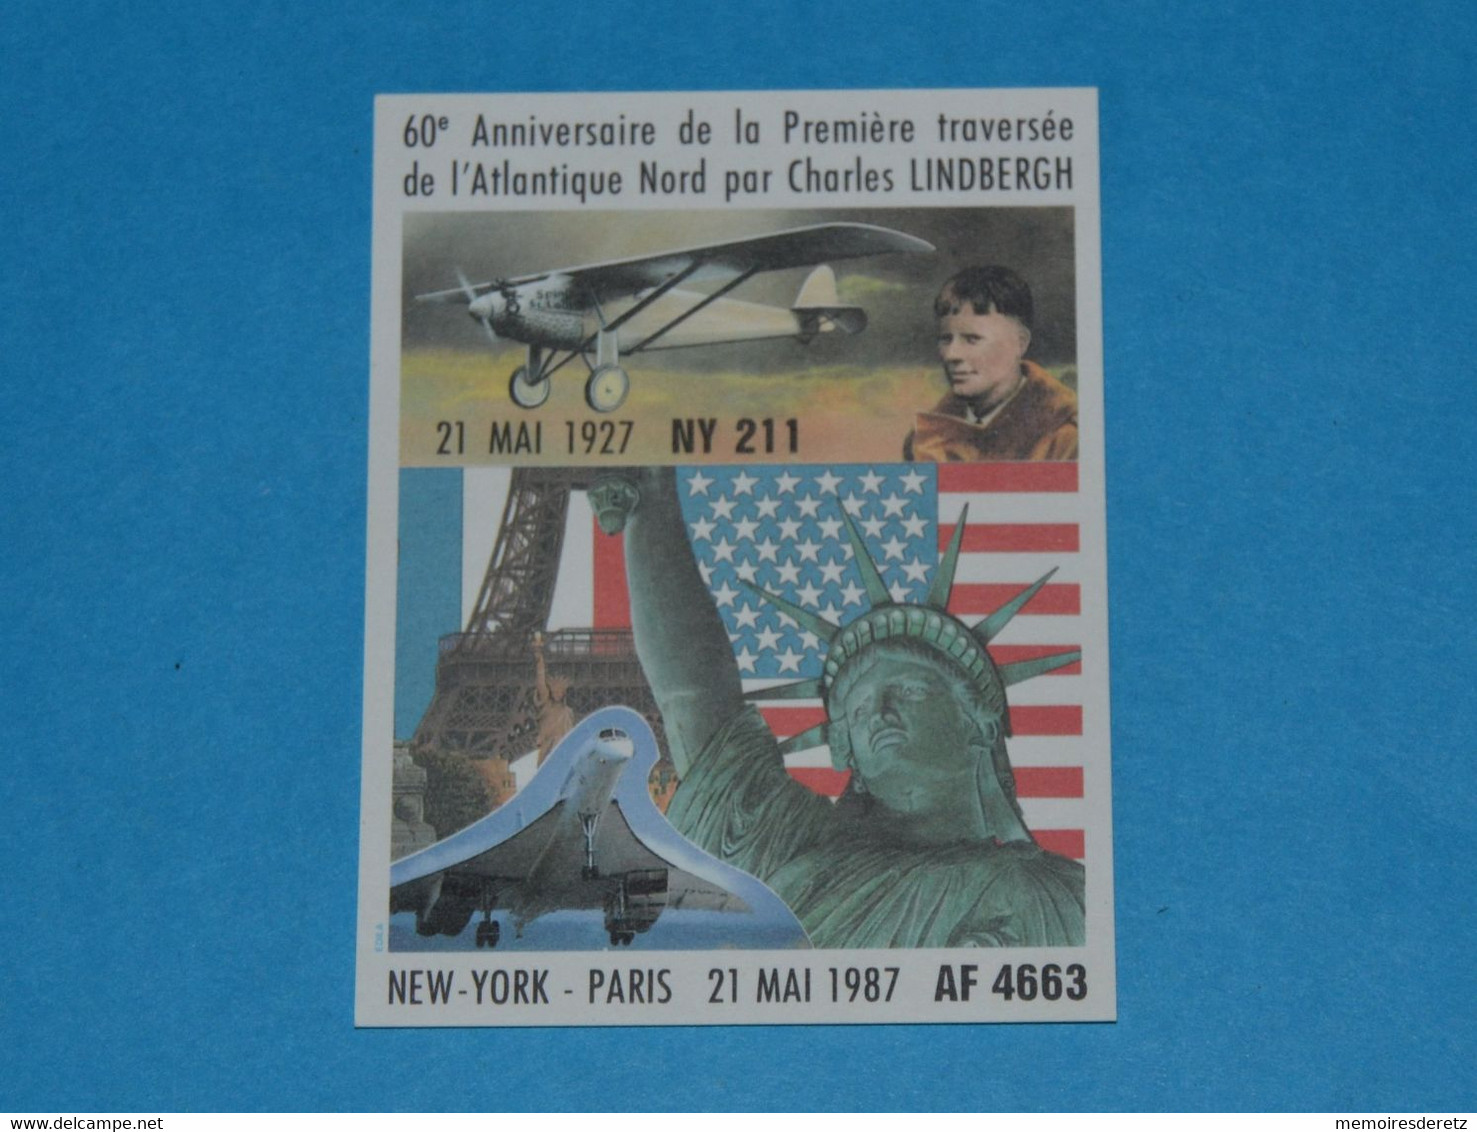 Avion CONCORDE - Autocollant Sticker -NEW-YORK PARIS 21 Mai 1987 60ème Anniversaire LINDBERGH Tour Eiffel Statue Liberté - Aufkleber